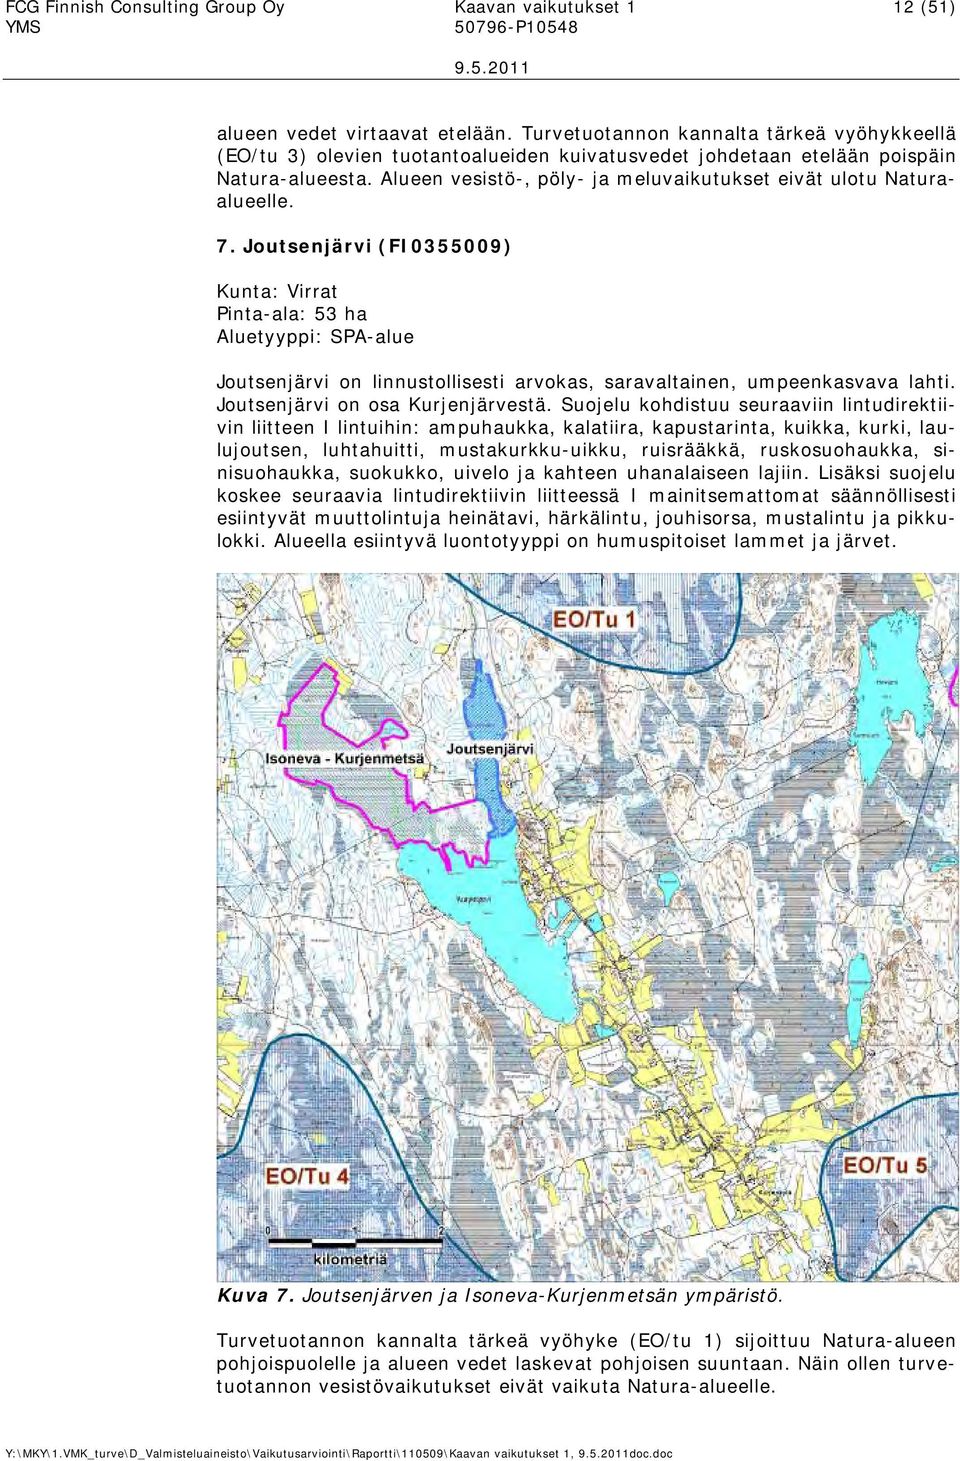 7. Joutsenjärvi (FI0355009 Kunta: Virrat Pinta-ala: 53 ha Aluetyyppi: SPA-alue Joutsenjärvi on linnustollisesti arvokas, saravaltainen, umpeenkasvava lahti. Joutsenjärvi on osa Kurjenjärvestä.